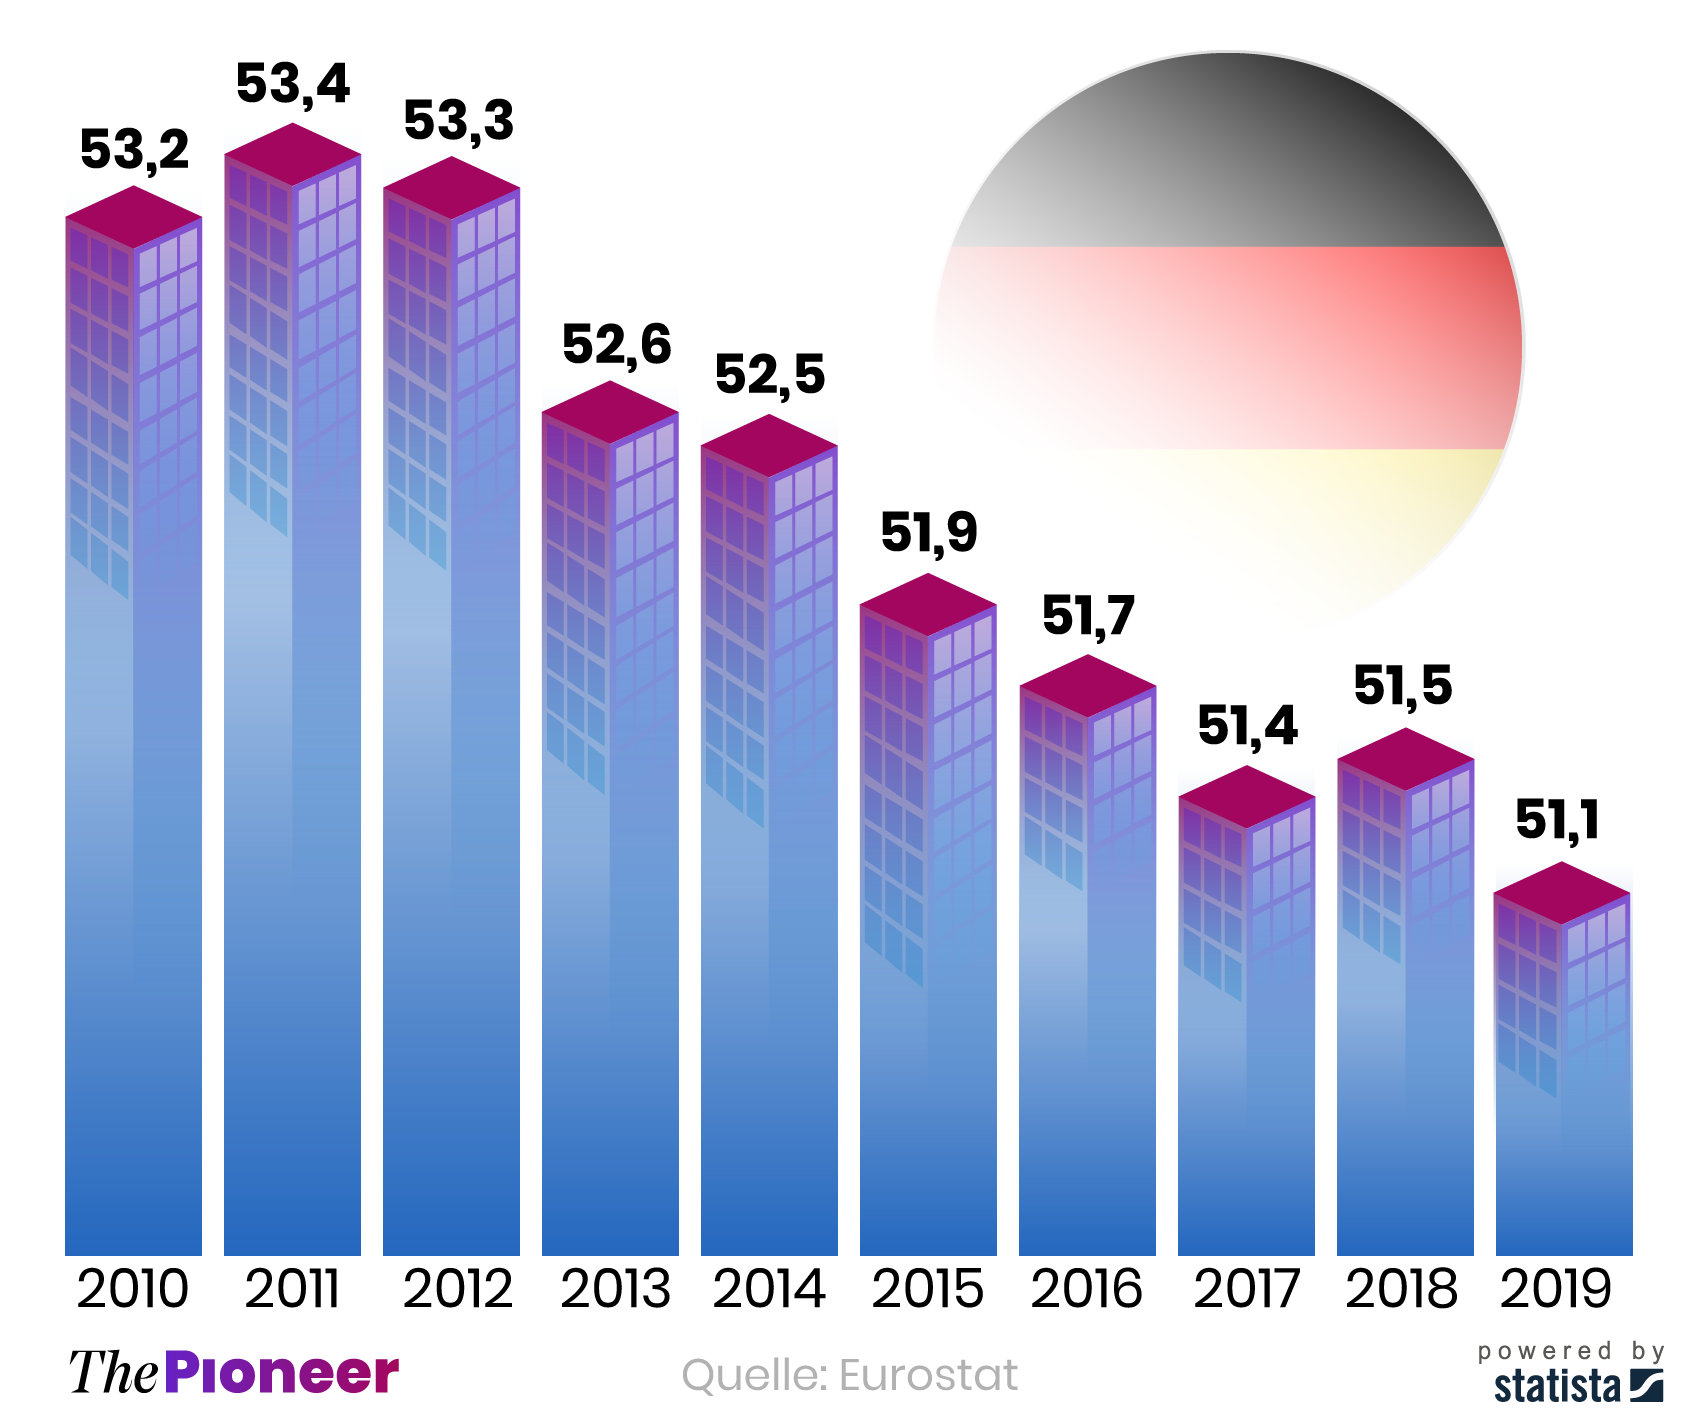 Wohneigentumsquote in Deutschland seit 2010, in Prozent